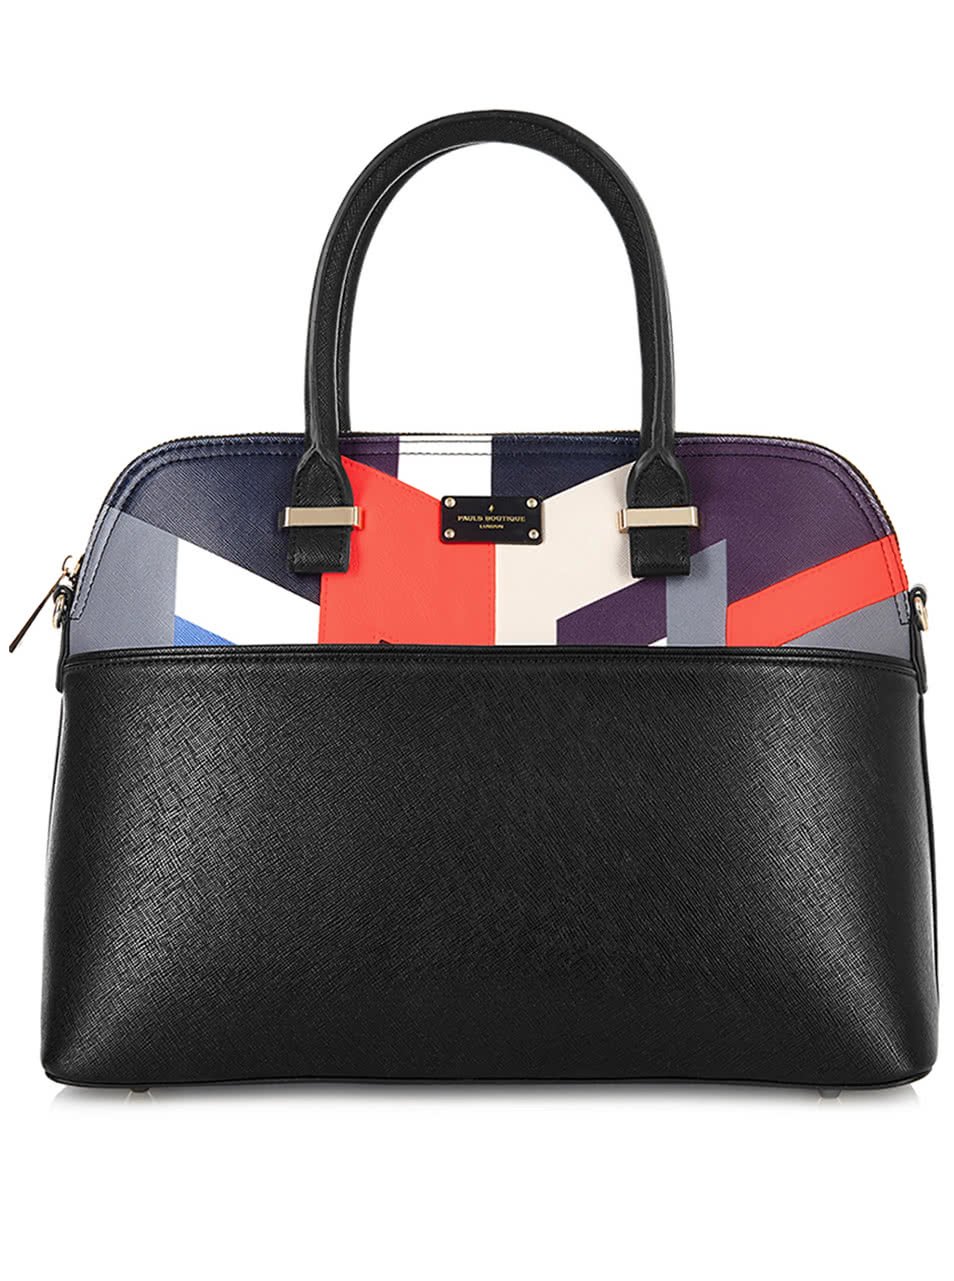 Černá kabelka s barevnými geometrickými vzory Paul's Boutique Maisy